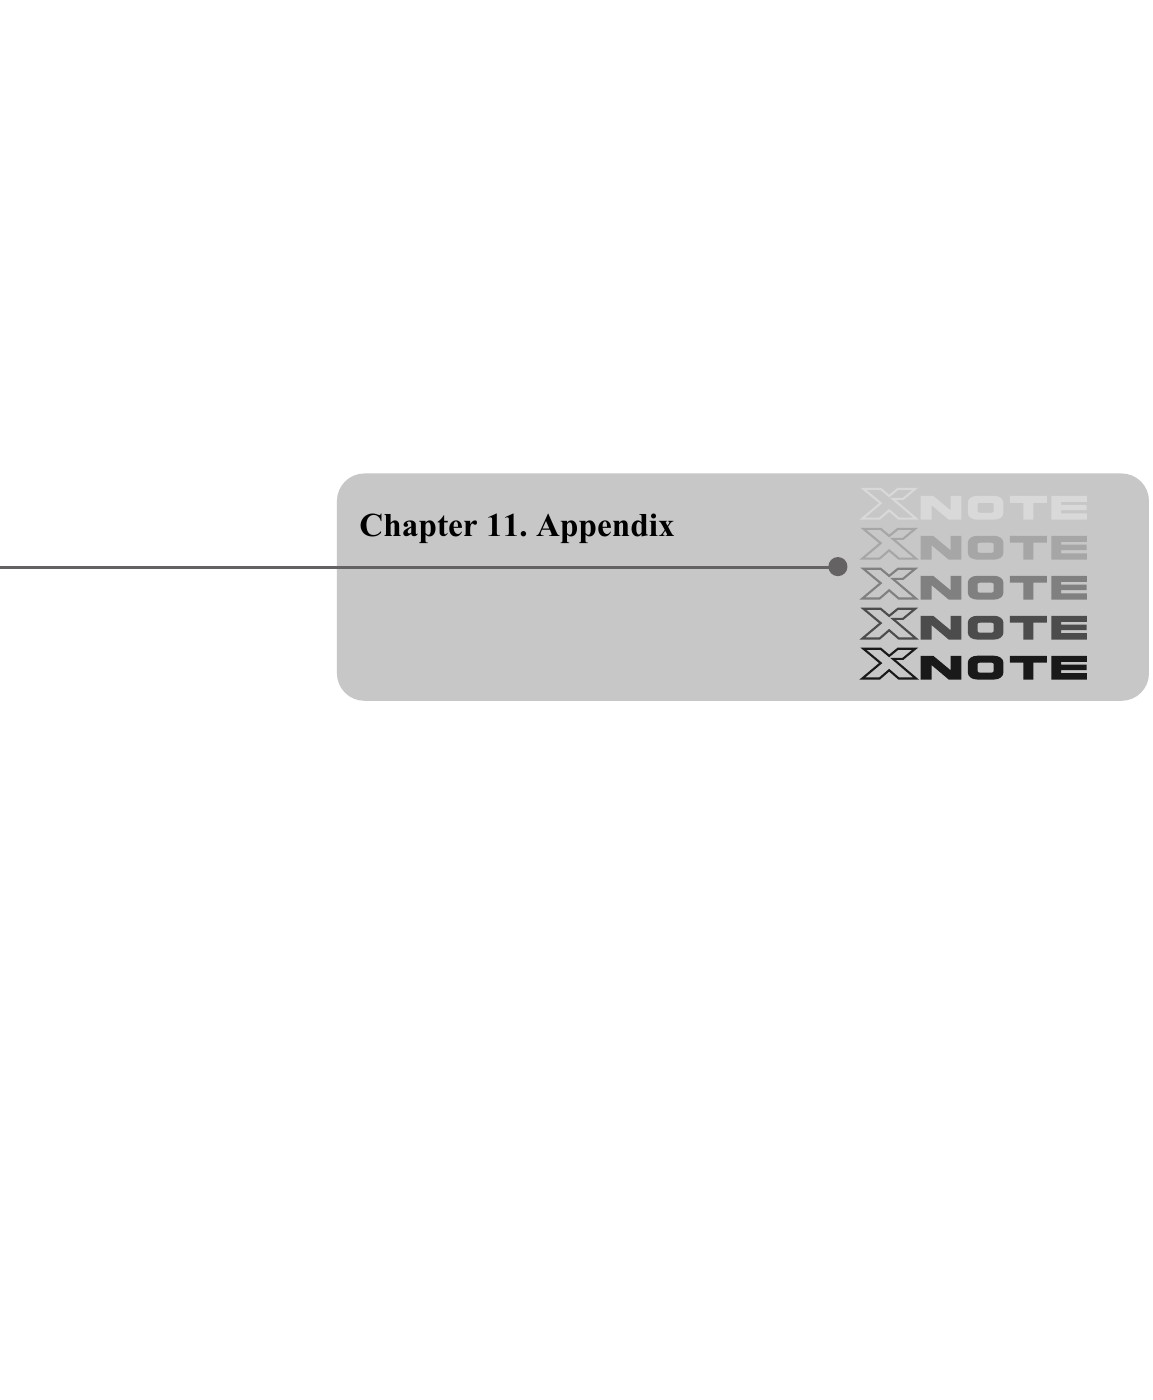 Chapter 11. Appendix